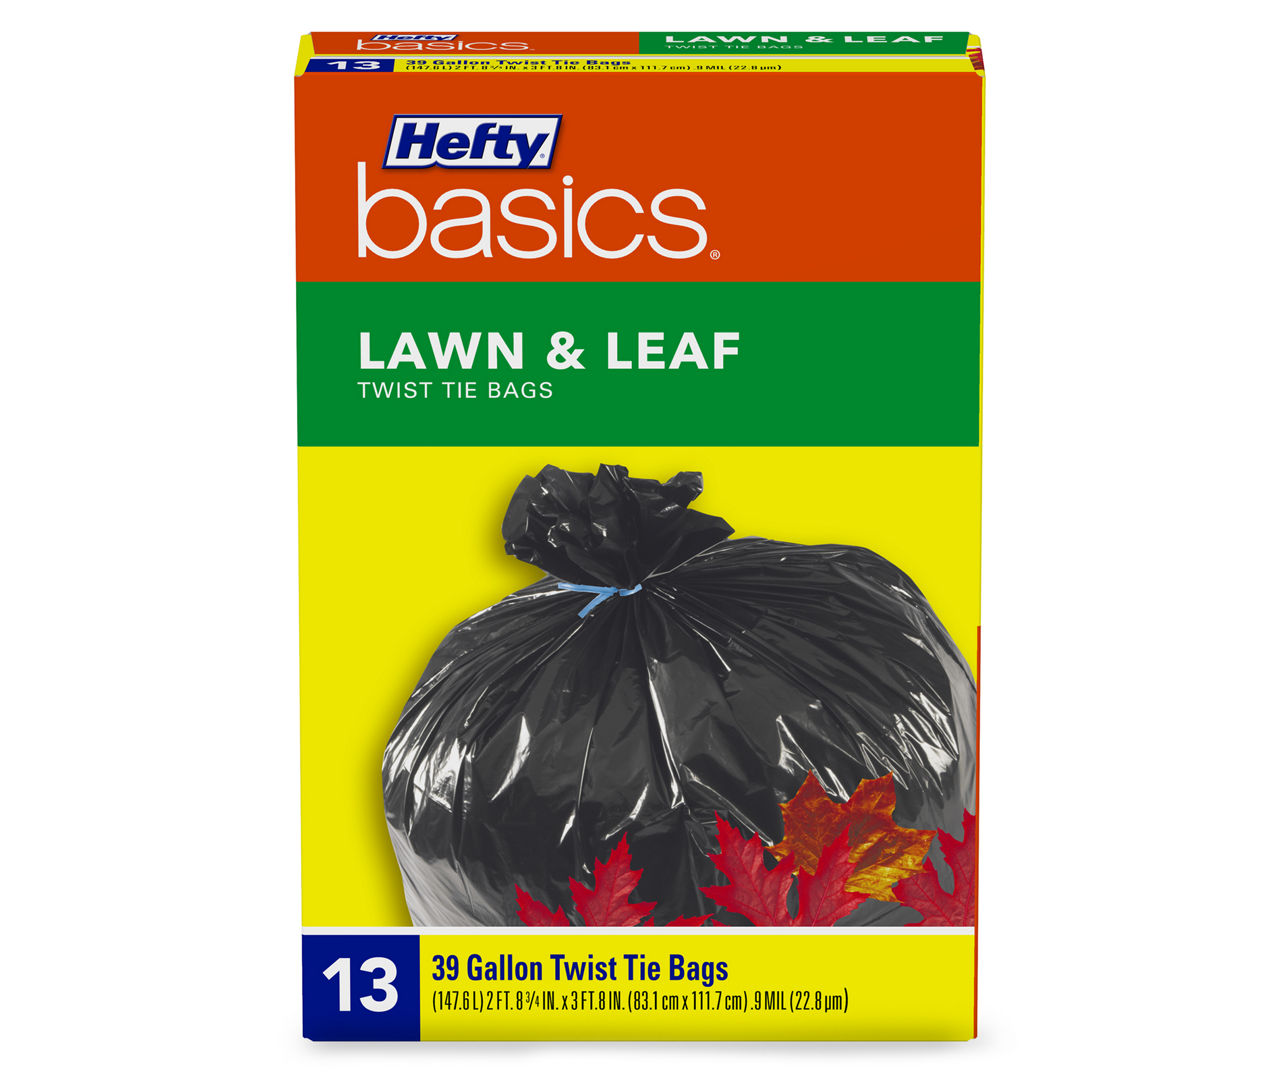 Hefty Basics Hefty Basics 39 Gallon Lawn & Leaf Twist Tie Bags 13